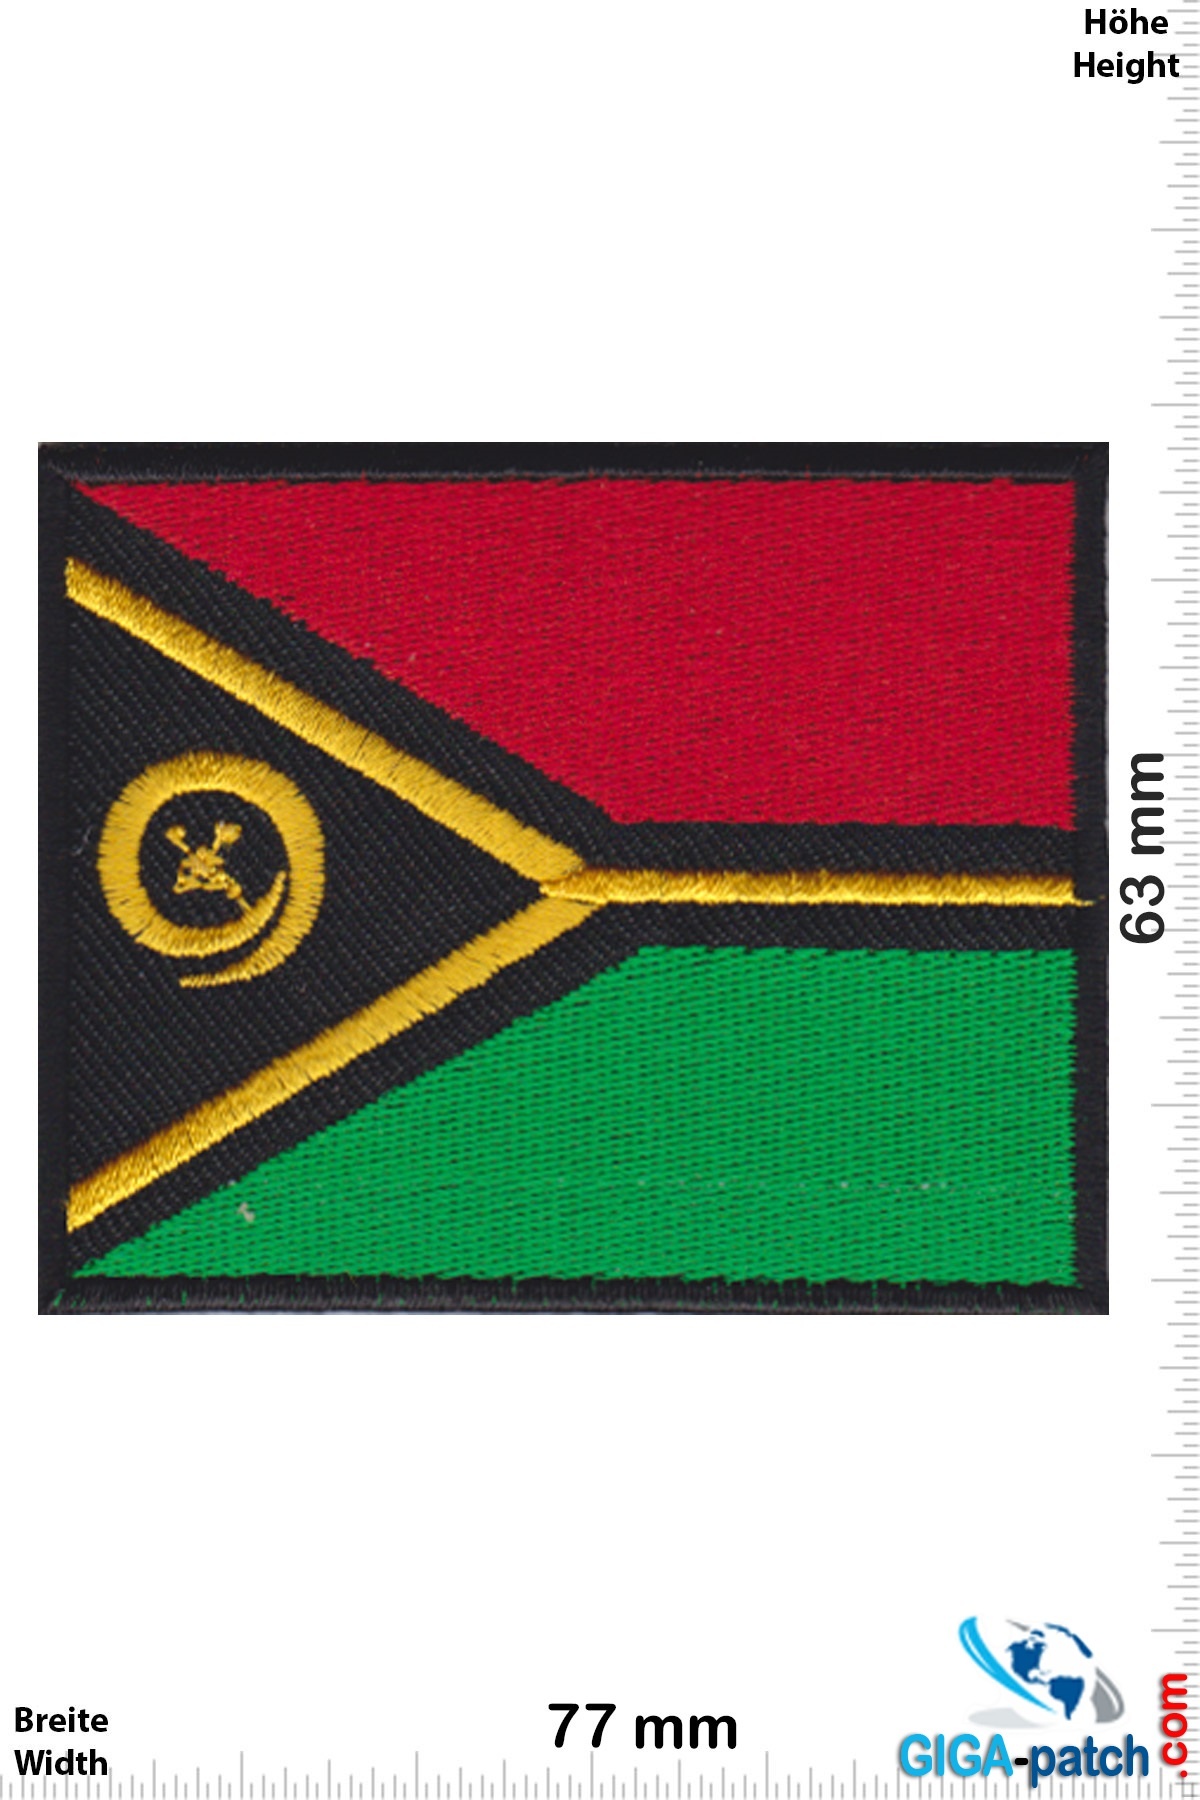 Vanuatu - Flag